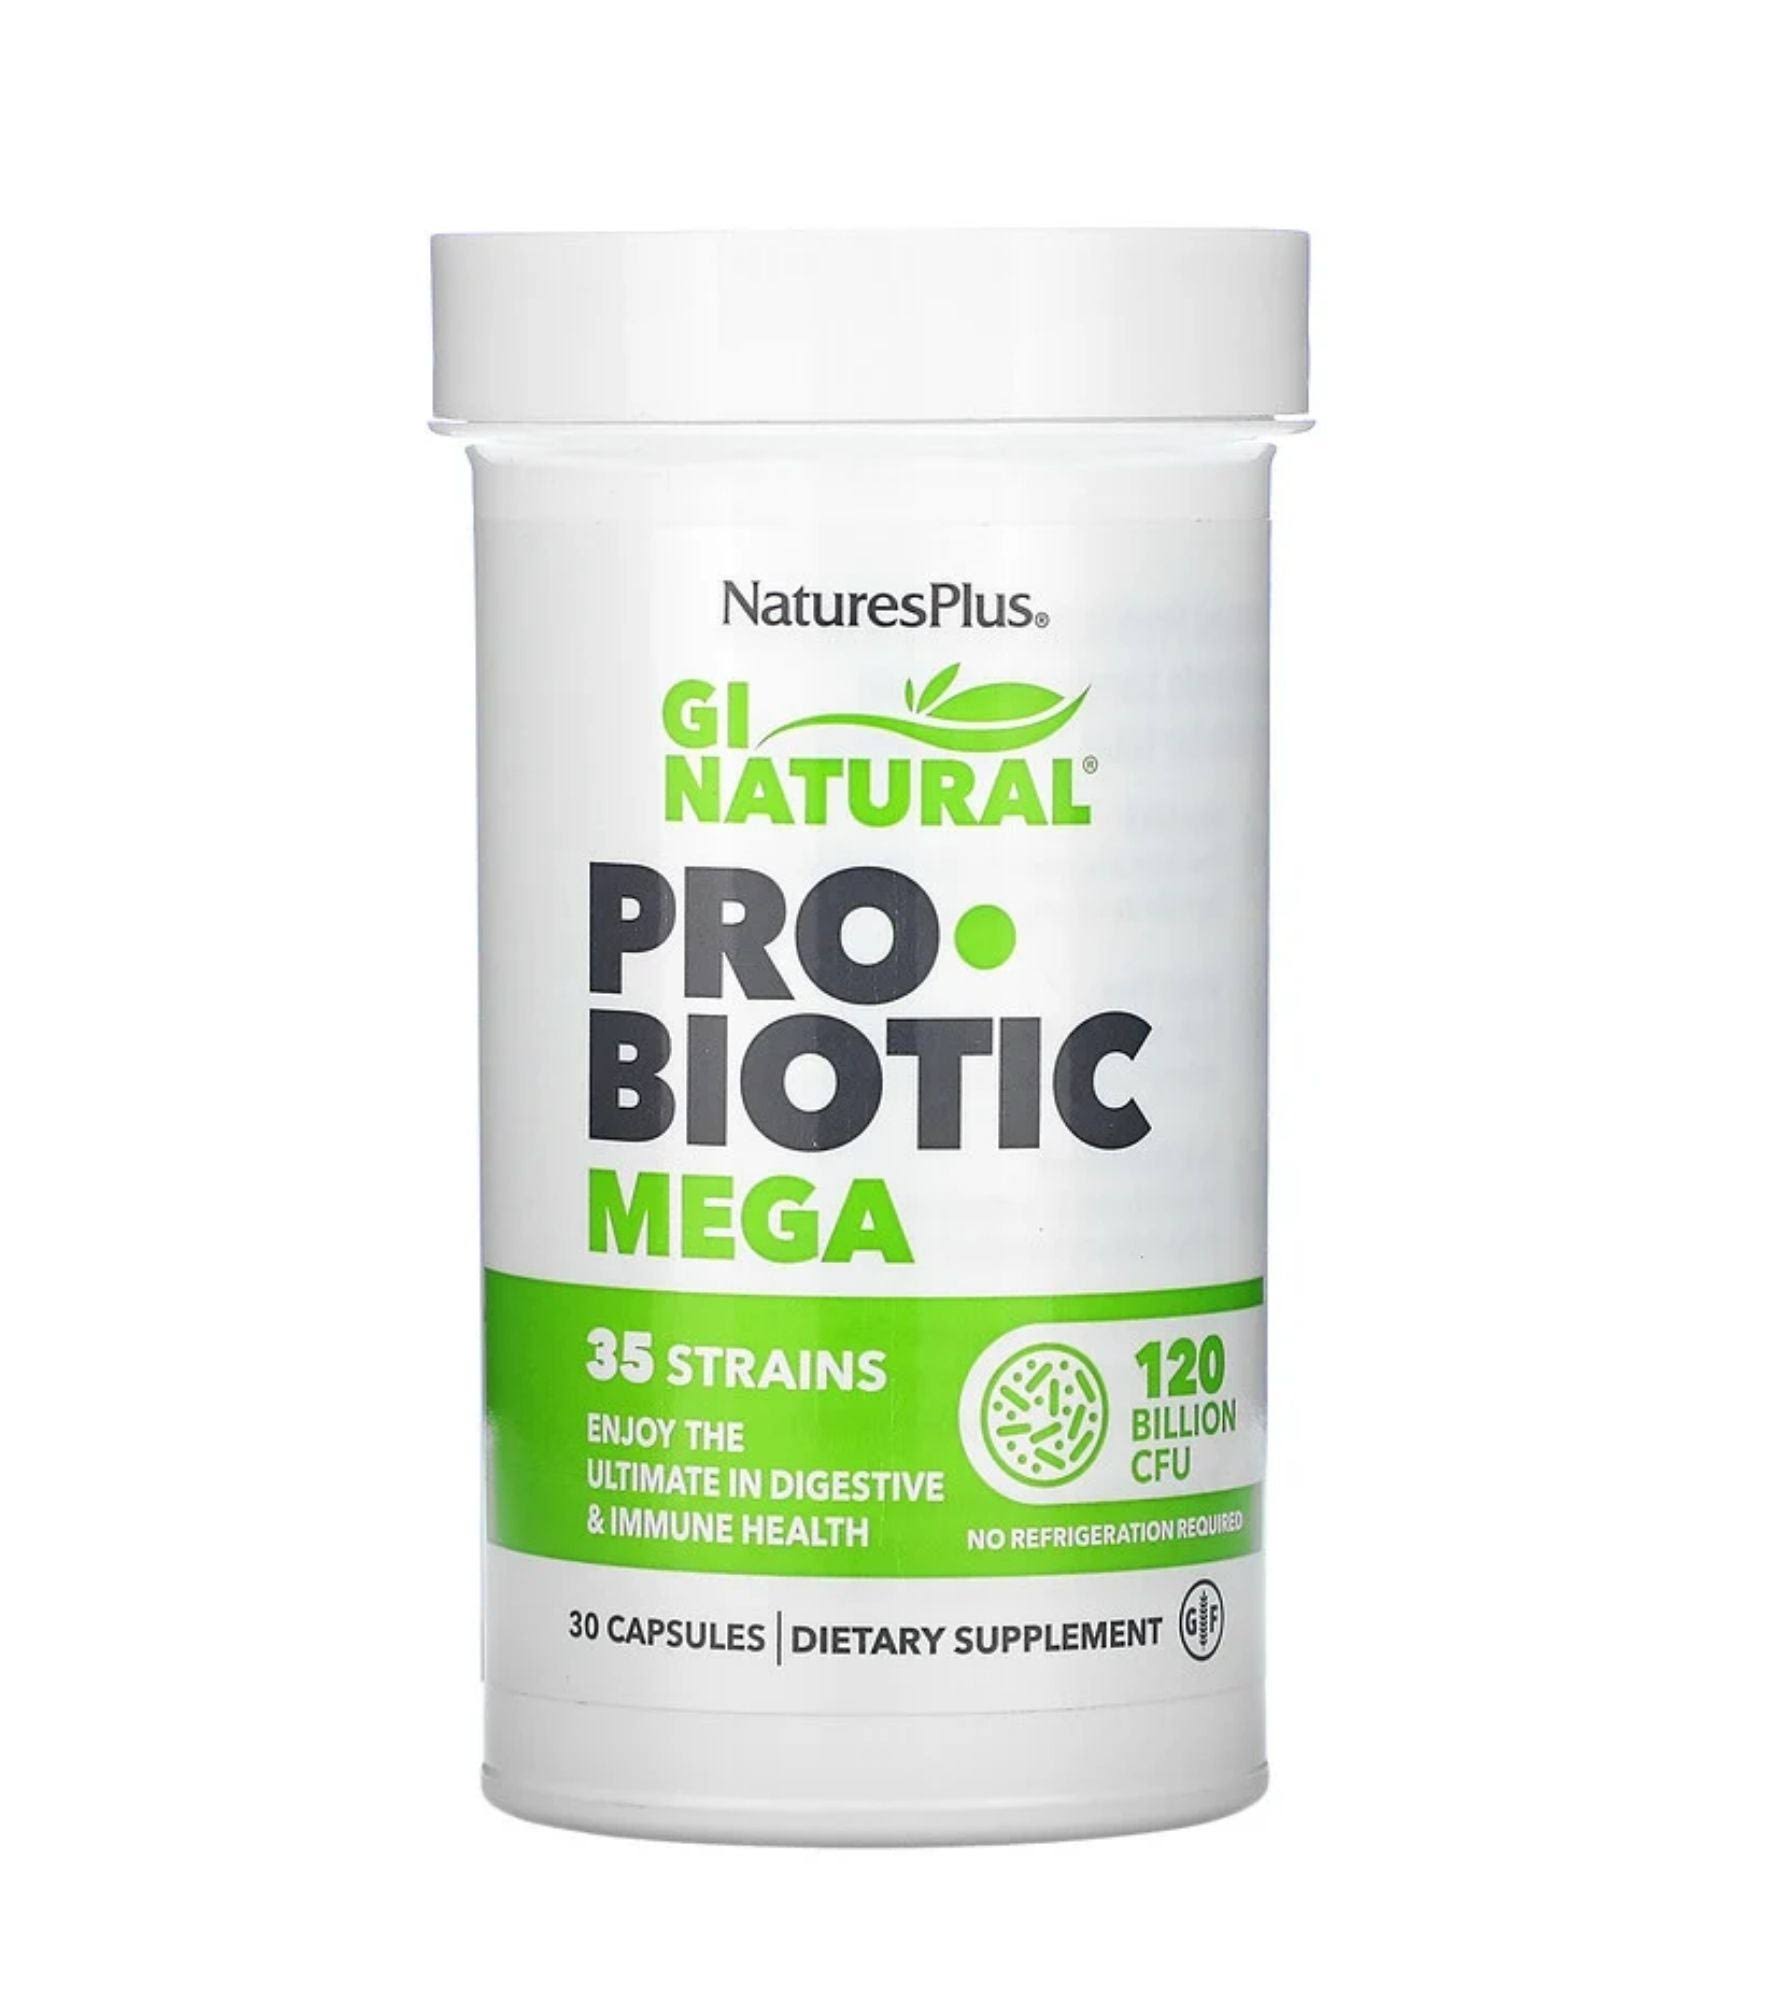 Nature's Plus Gi Natural Probiotic Mega 30 Capsules